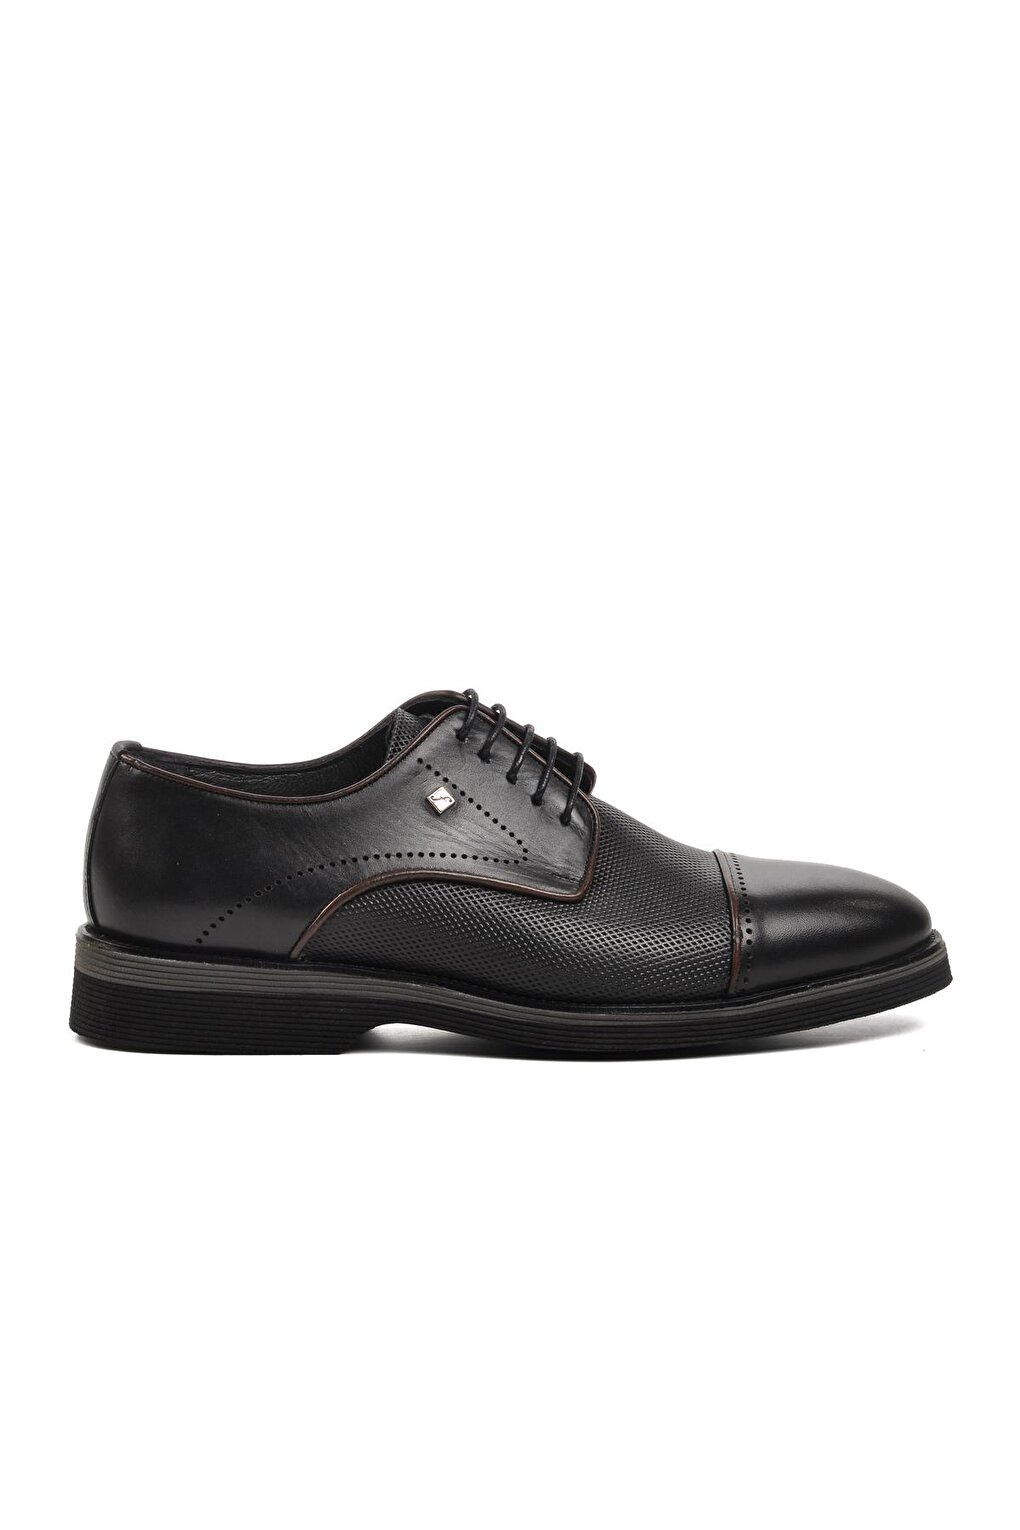 2960 Черные мужские классические туфли из натуральной кожи Fosco